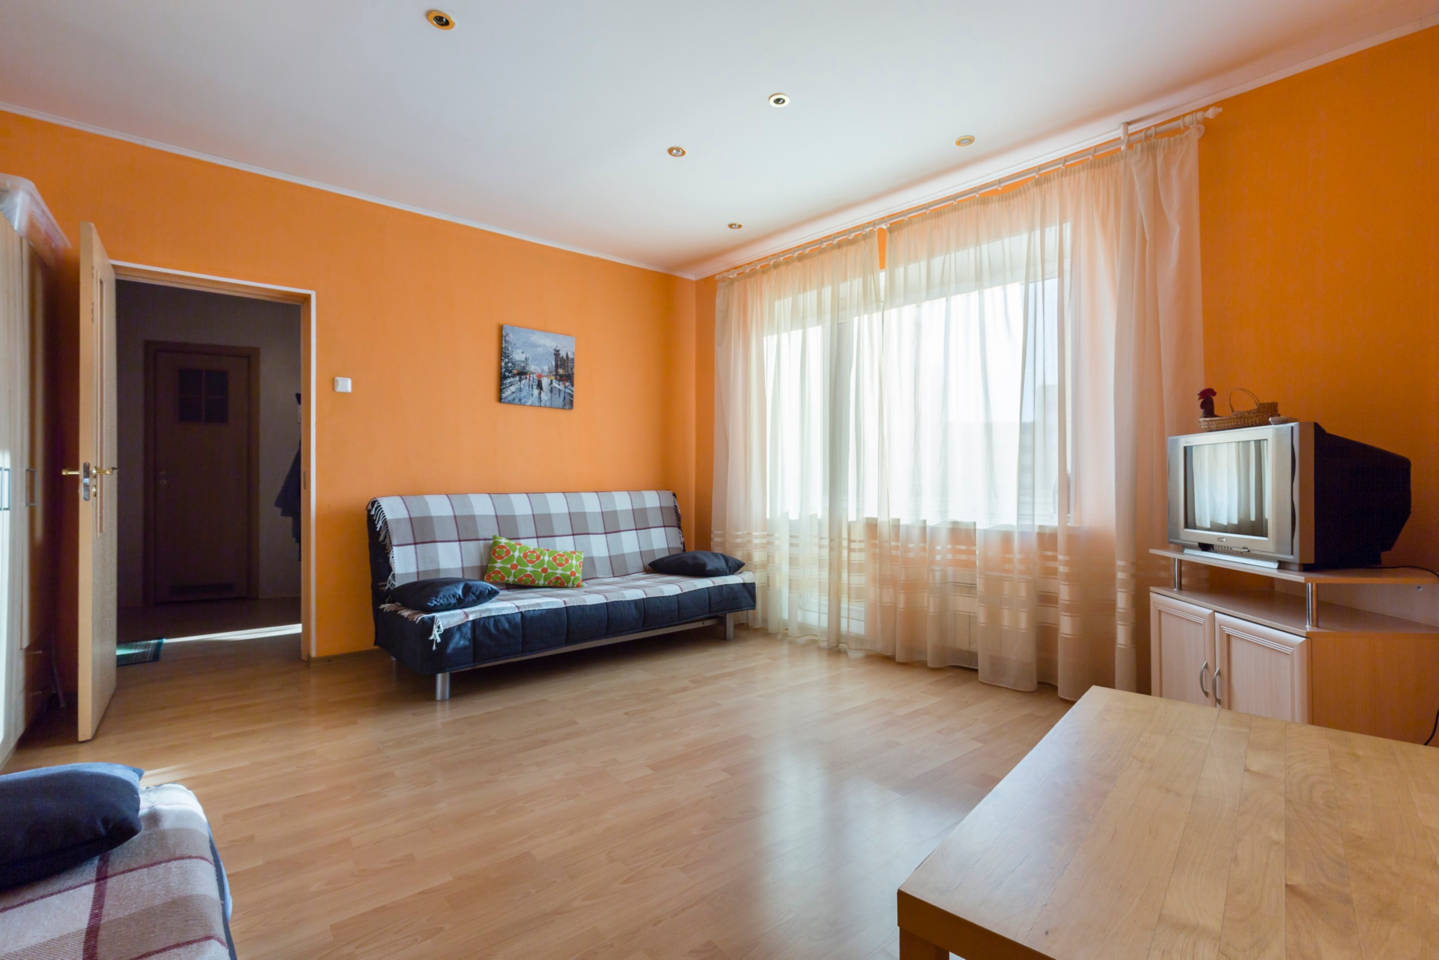 Квартира на Васильевском острове комнатную квартиру